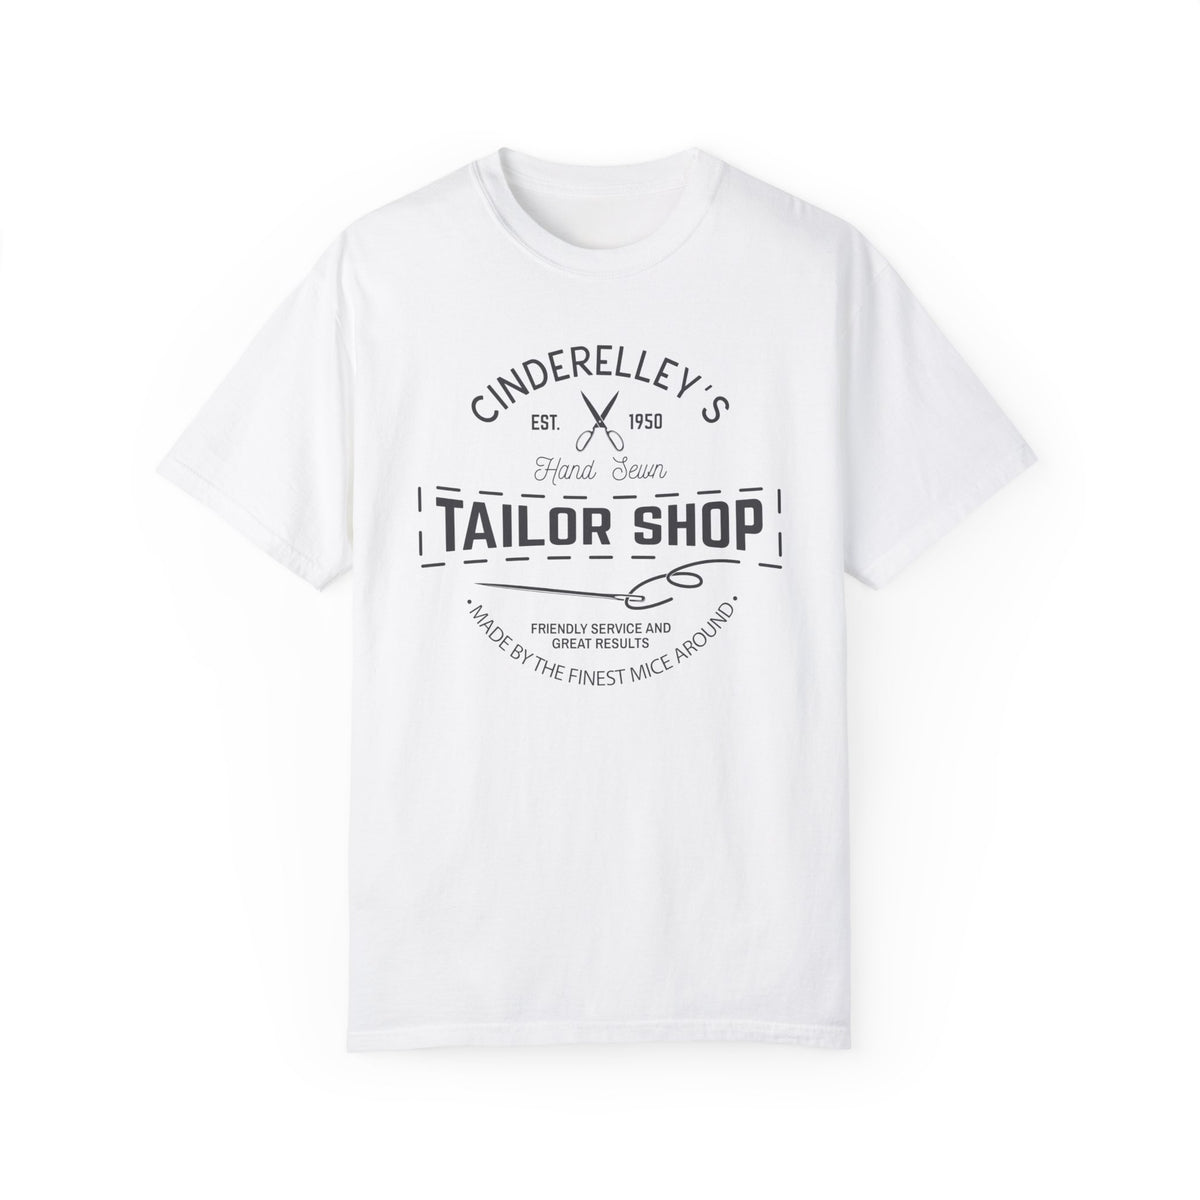 Cinderelley's Tailor Shop Comfort Colors Unisex Garment-Dyed T-shirt